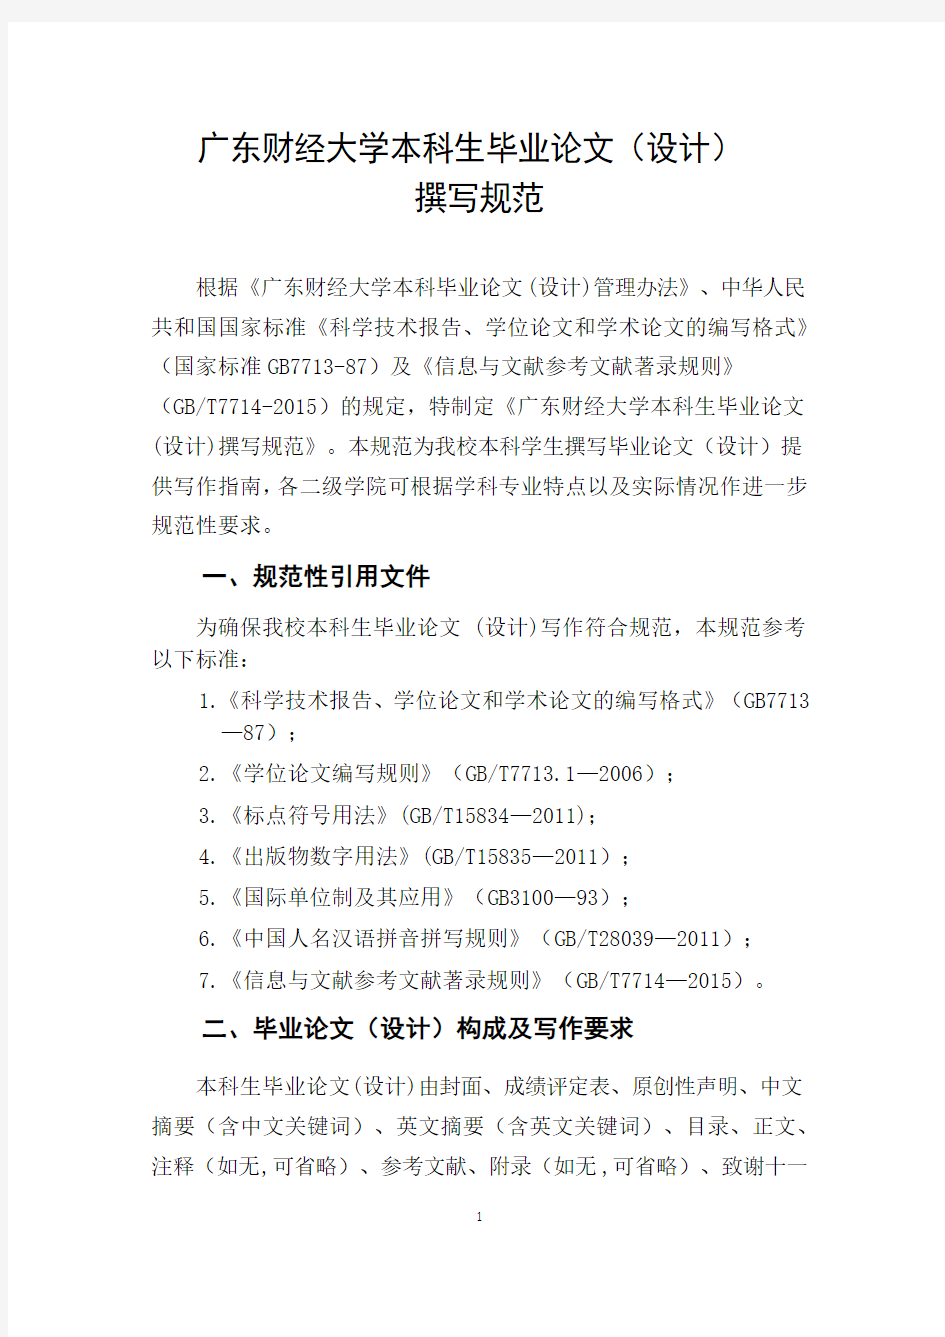 广东财经大学本科生毕业论文(设计)撰写规范(2020年修订)